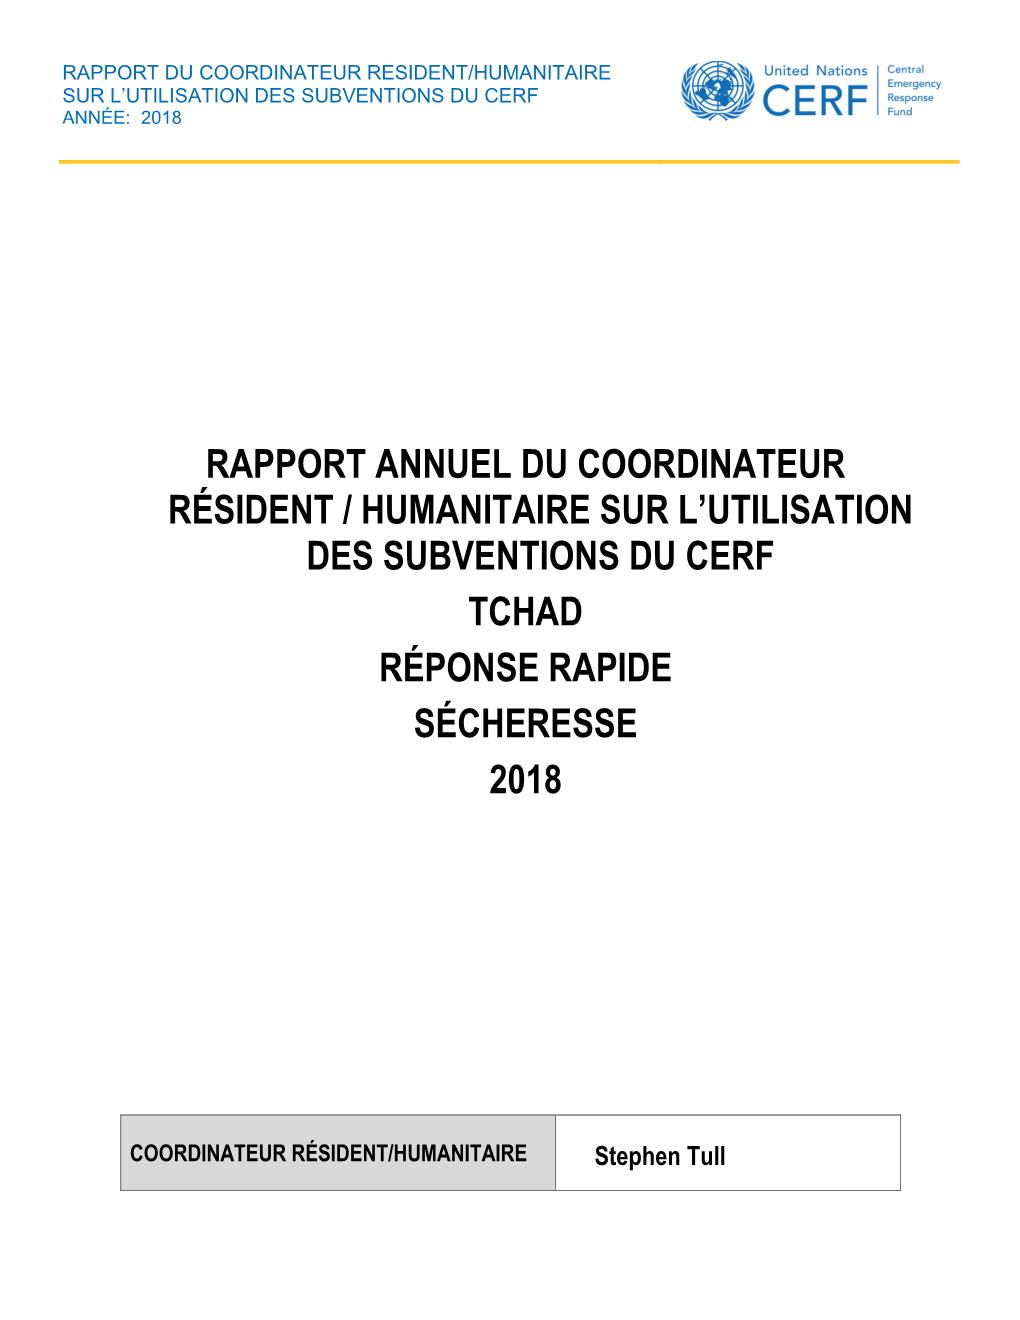 Rapport Annuel Du Coordinateur Résident / Humanitaire Sur L’Utilisation Des Subventions Du Cerf Tchad Réponse Rapide Sécheresse 2018